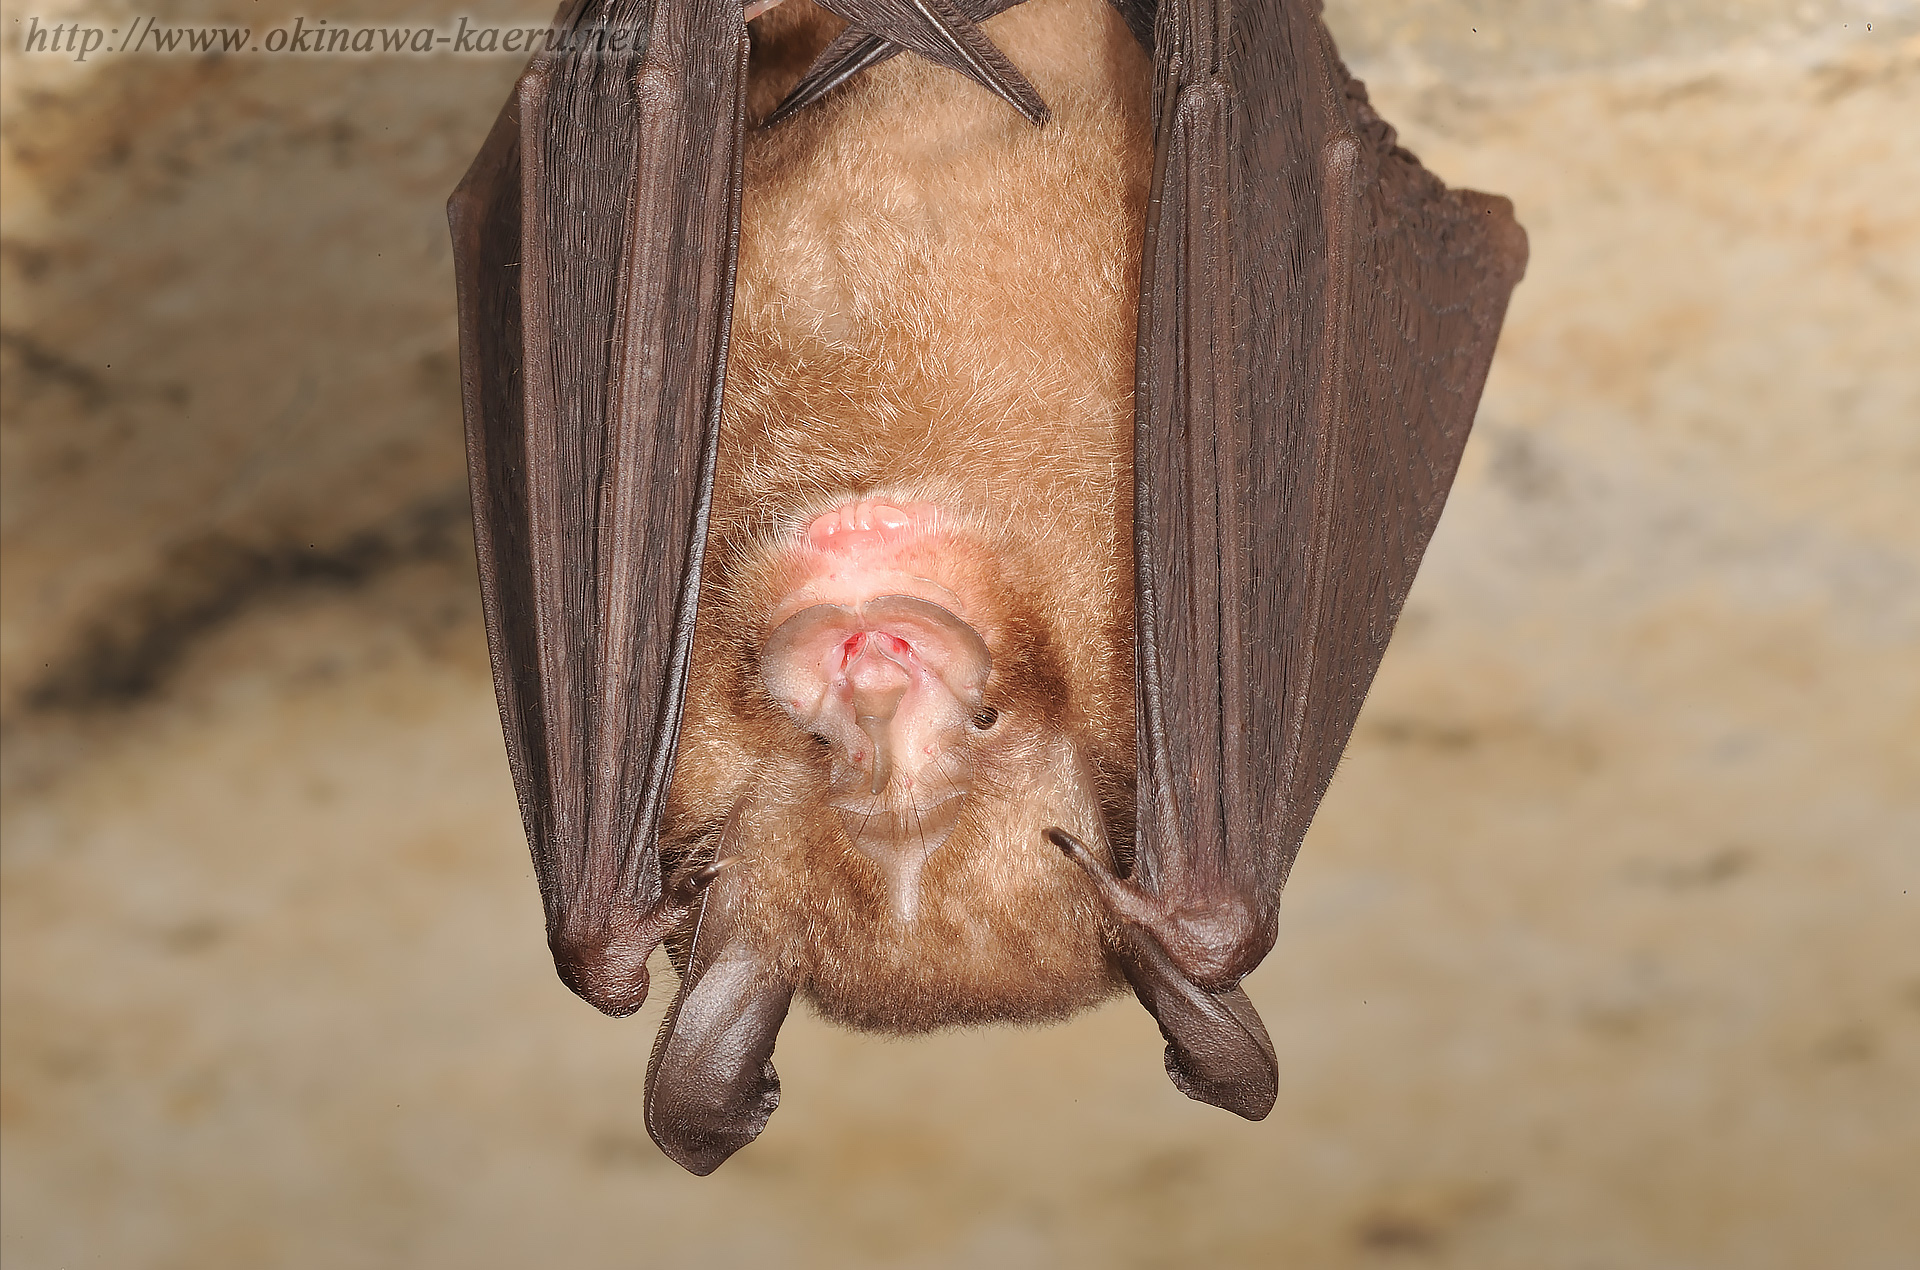 オキナワコキクガシラコウモリ Rhinolophus Pumilus Pumilus Okinawa Little Horseshoe Bat 沖縄の哺乳類 おきなわカエル商会